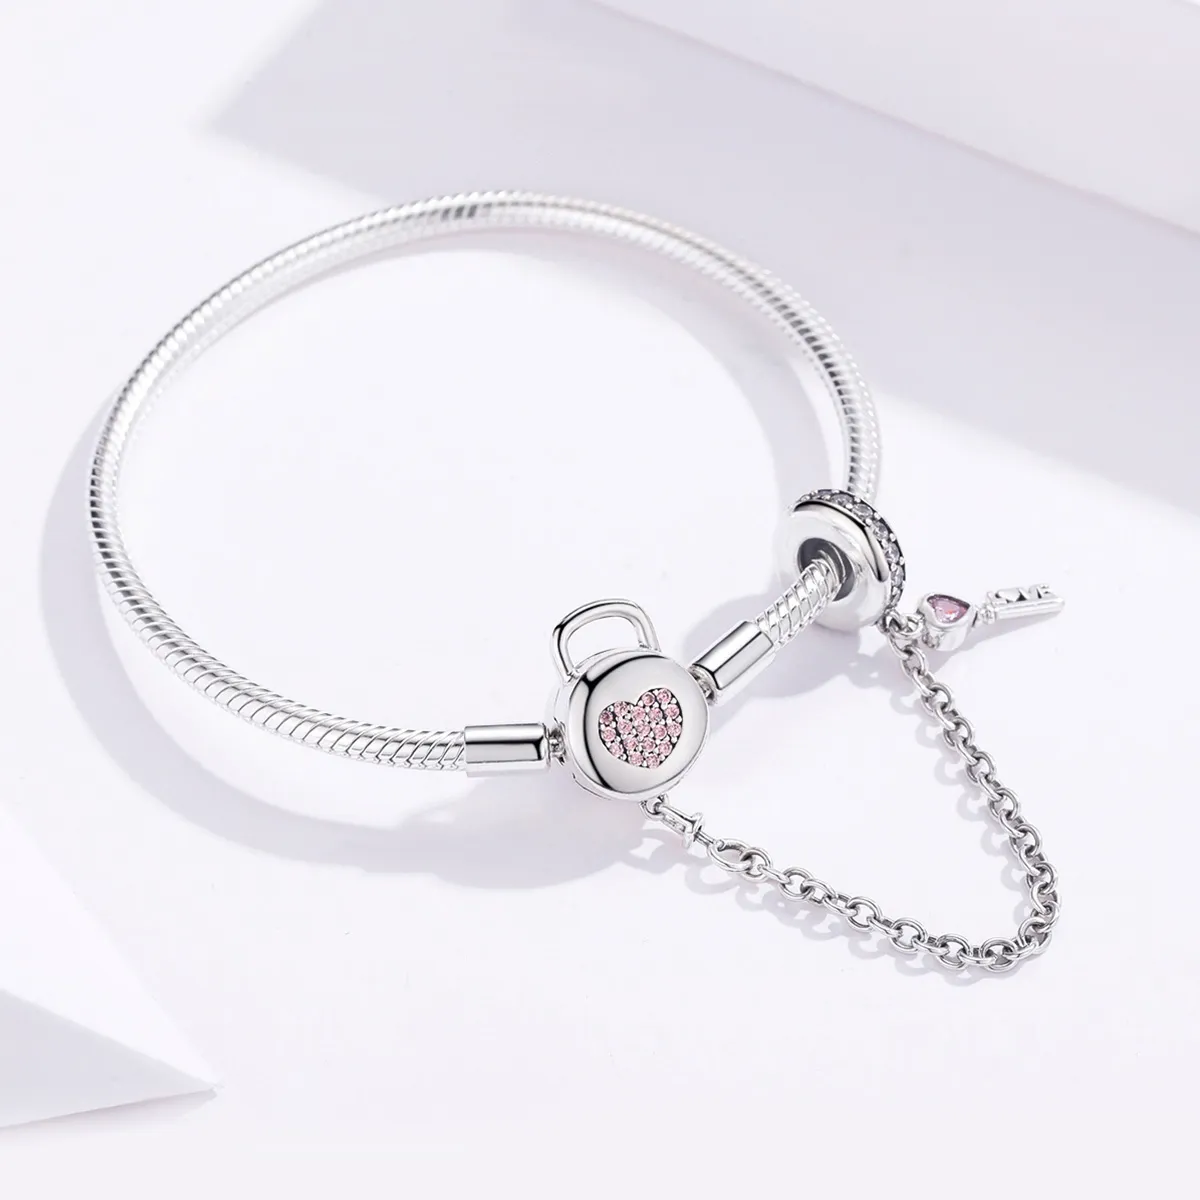 Brățară Tip Pandora cu Inima și cheia din argint - SCB143